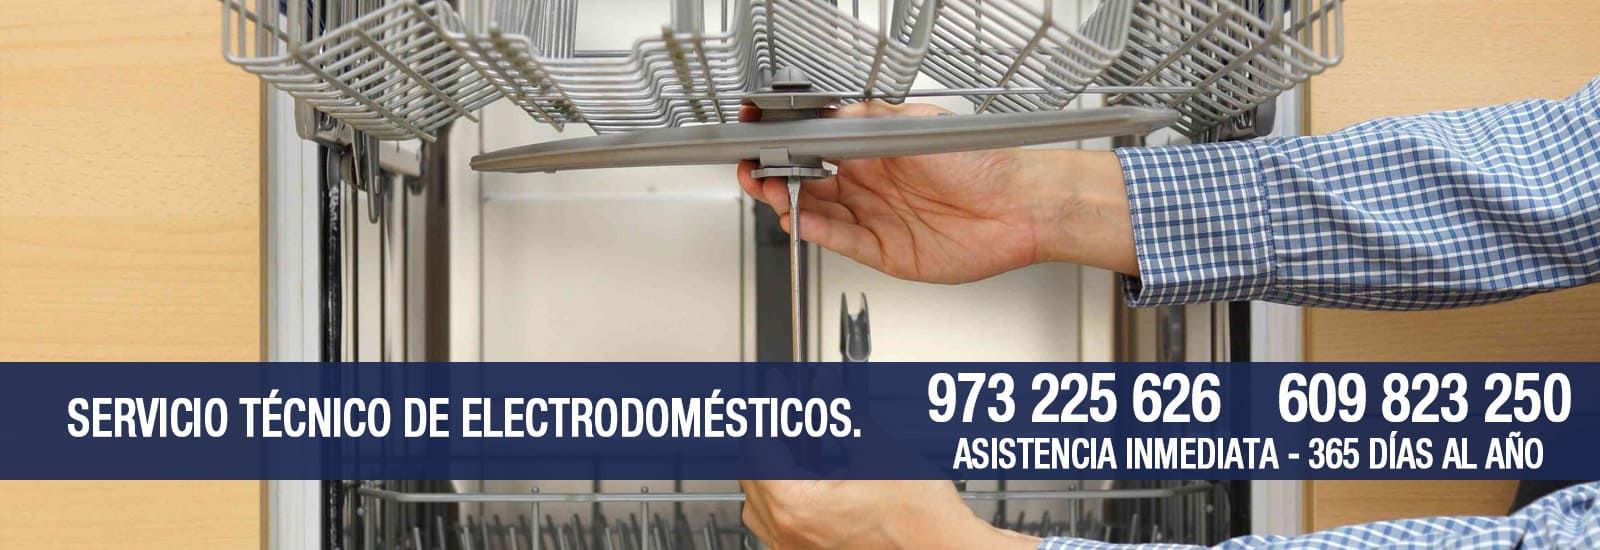 Multiservicios Abacel banner servicio técnico de electrodomésticos